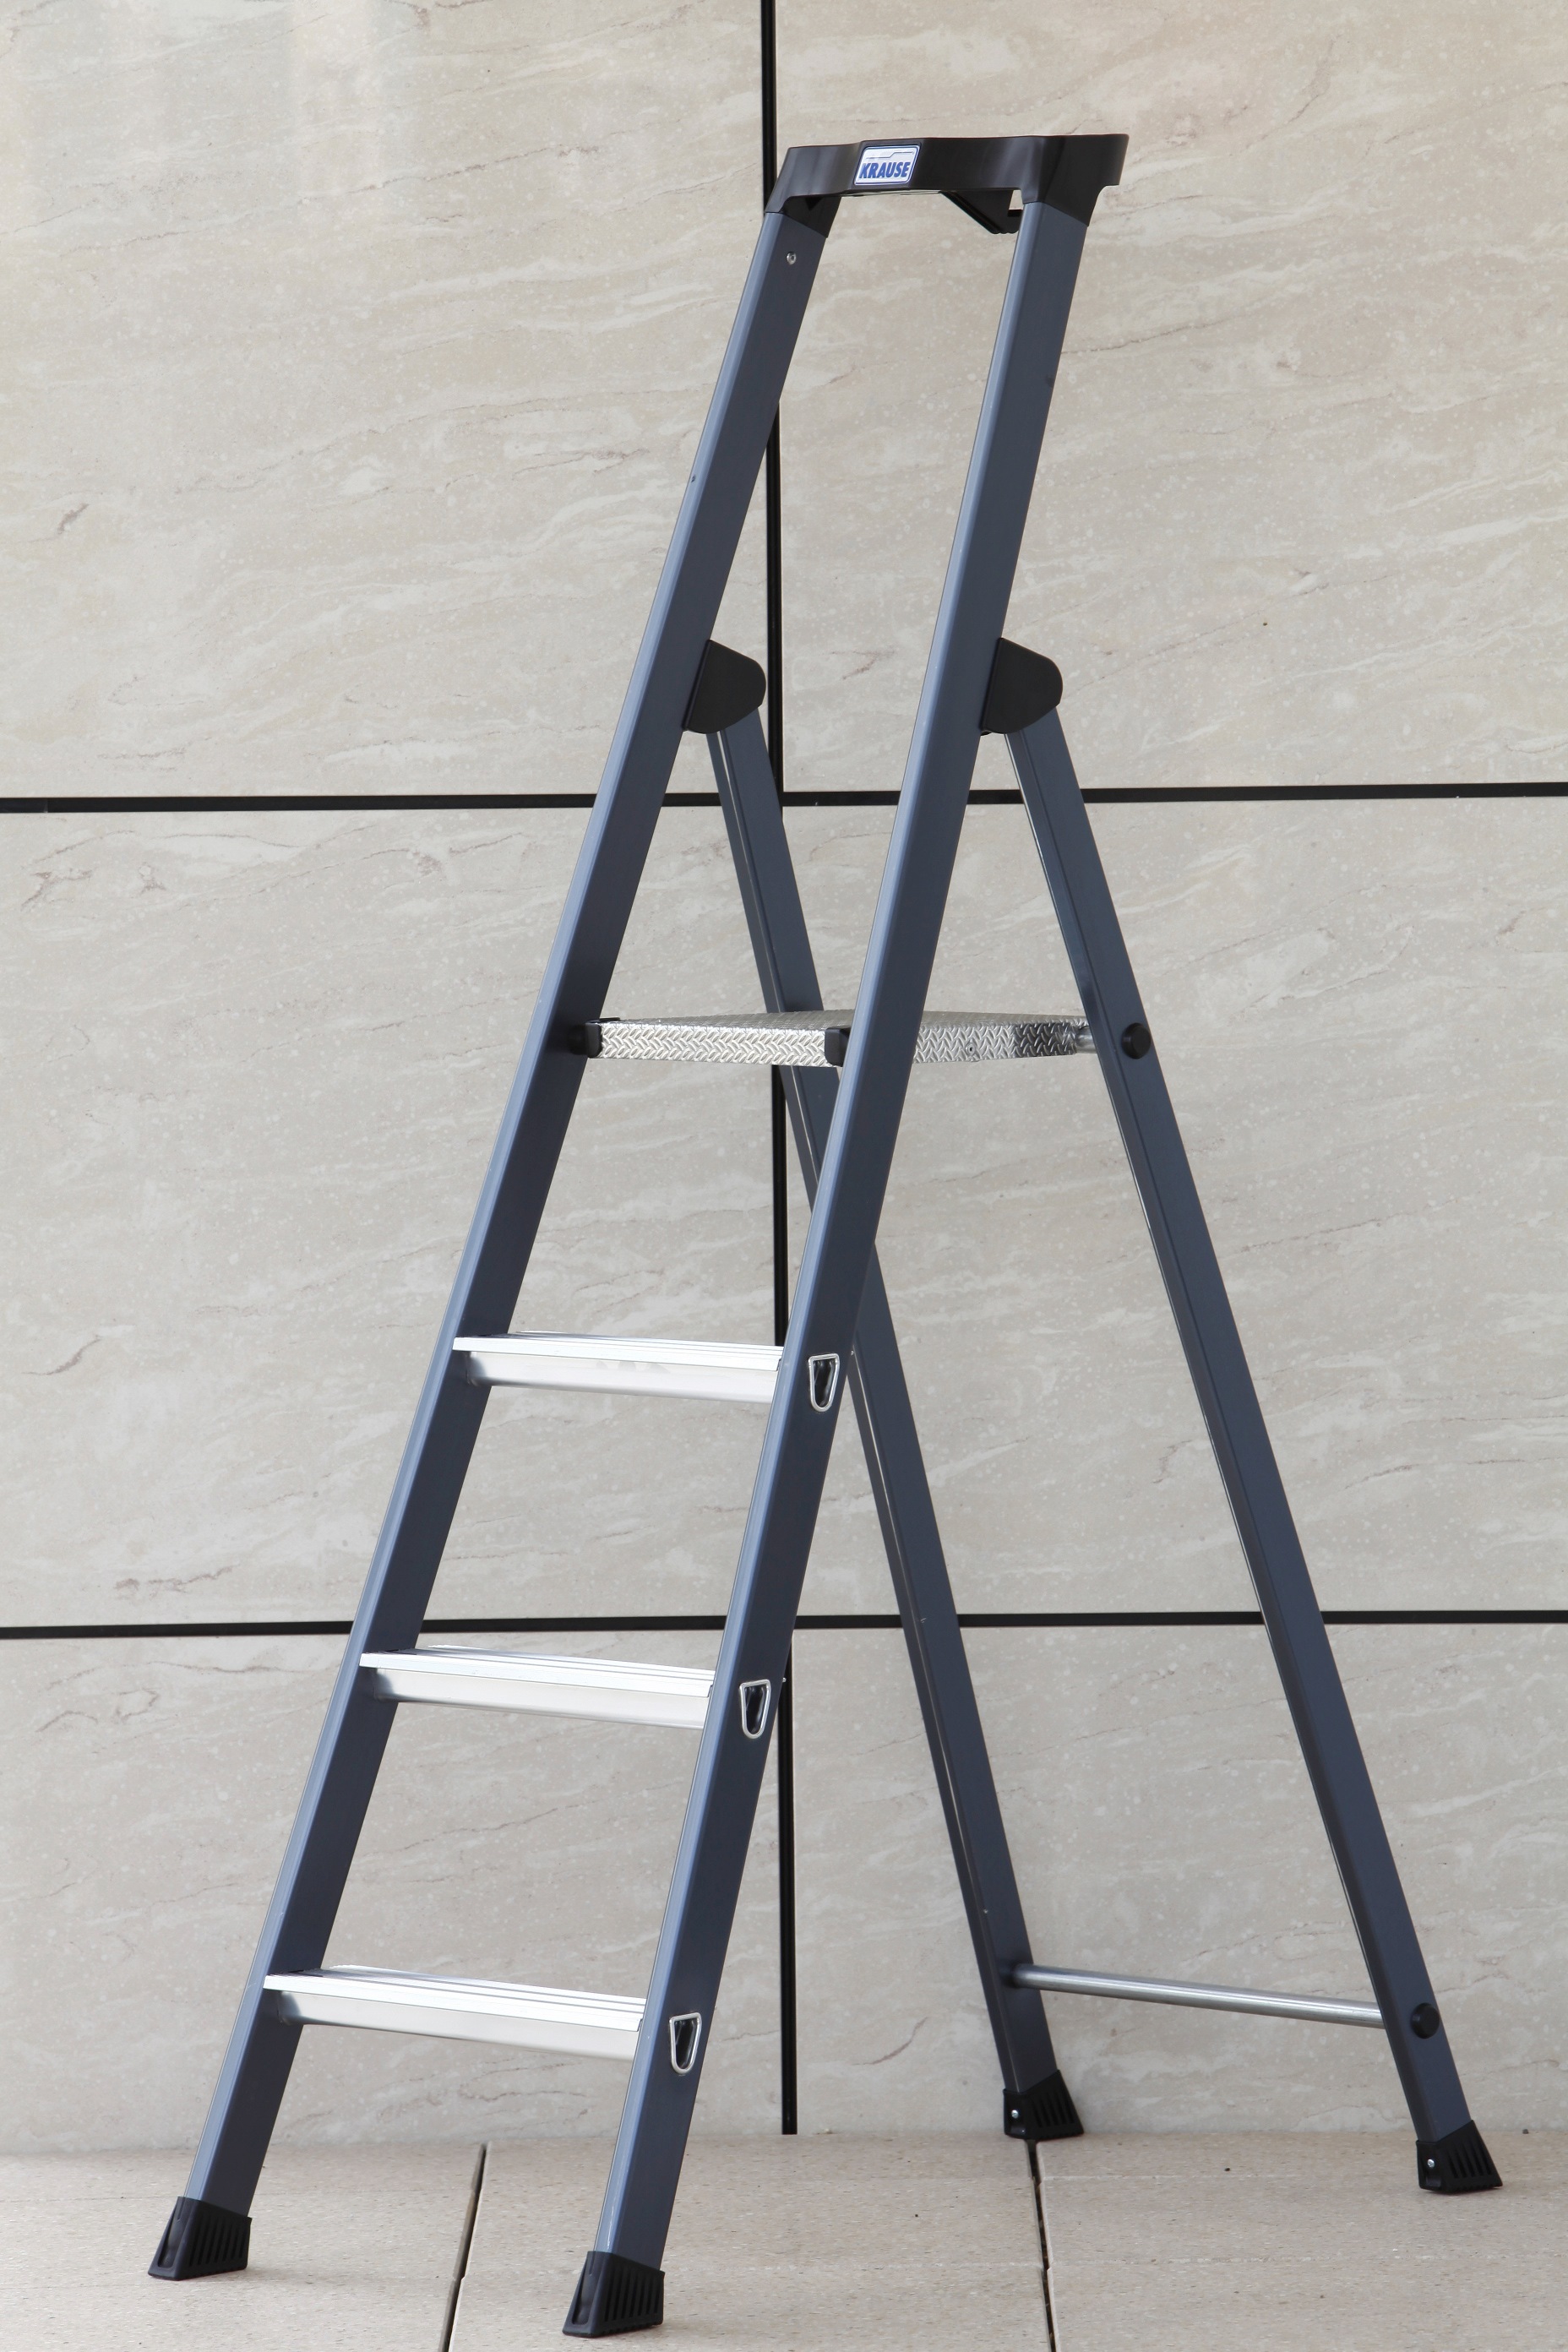 KRAUSE Stehleiter »SePro S«, Alu eloxiert, 1x4 Stufen, Arbeitshöhe ca. 285 cm